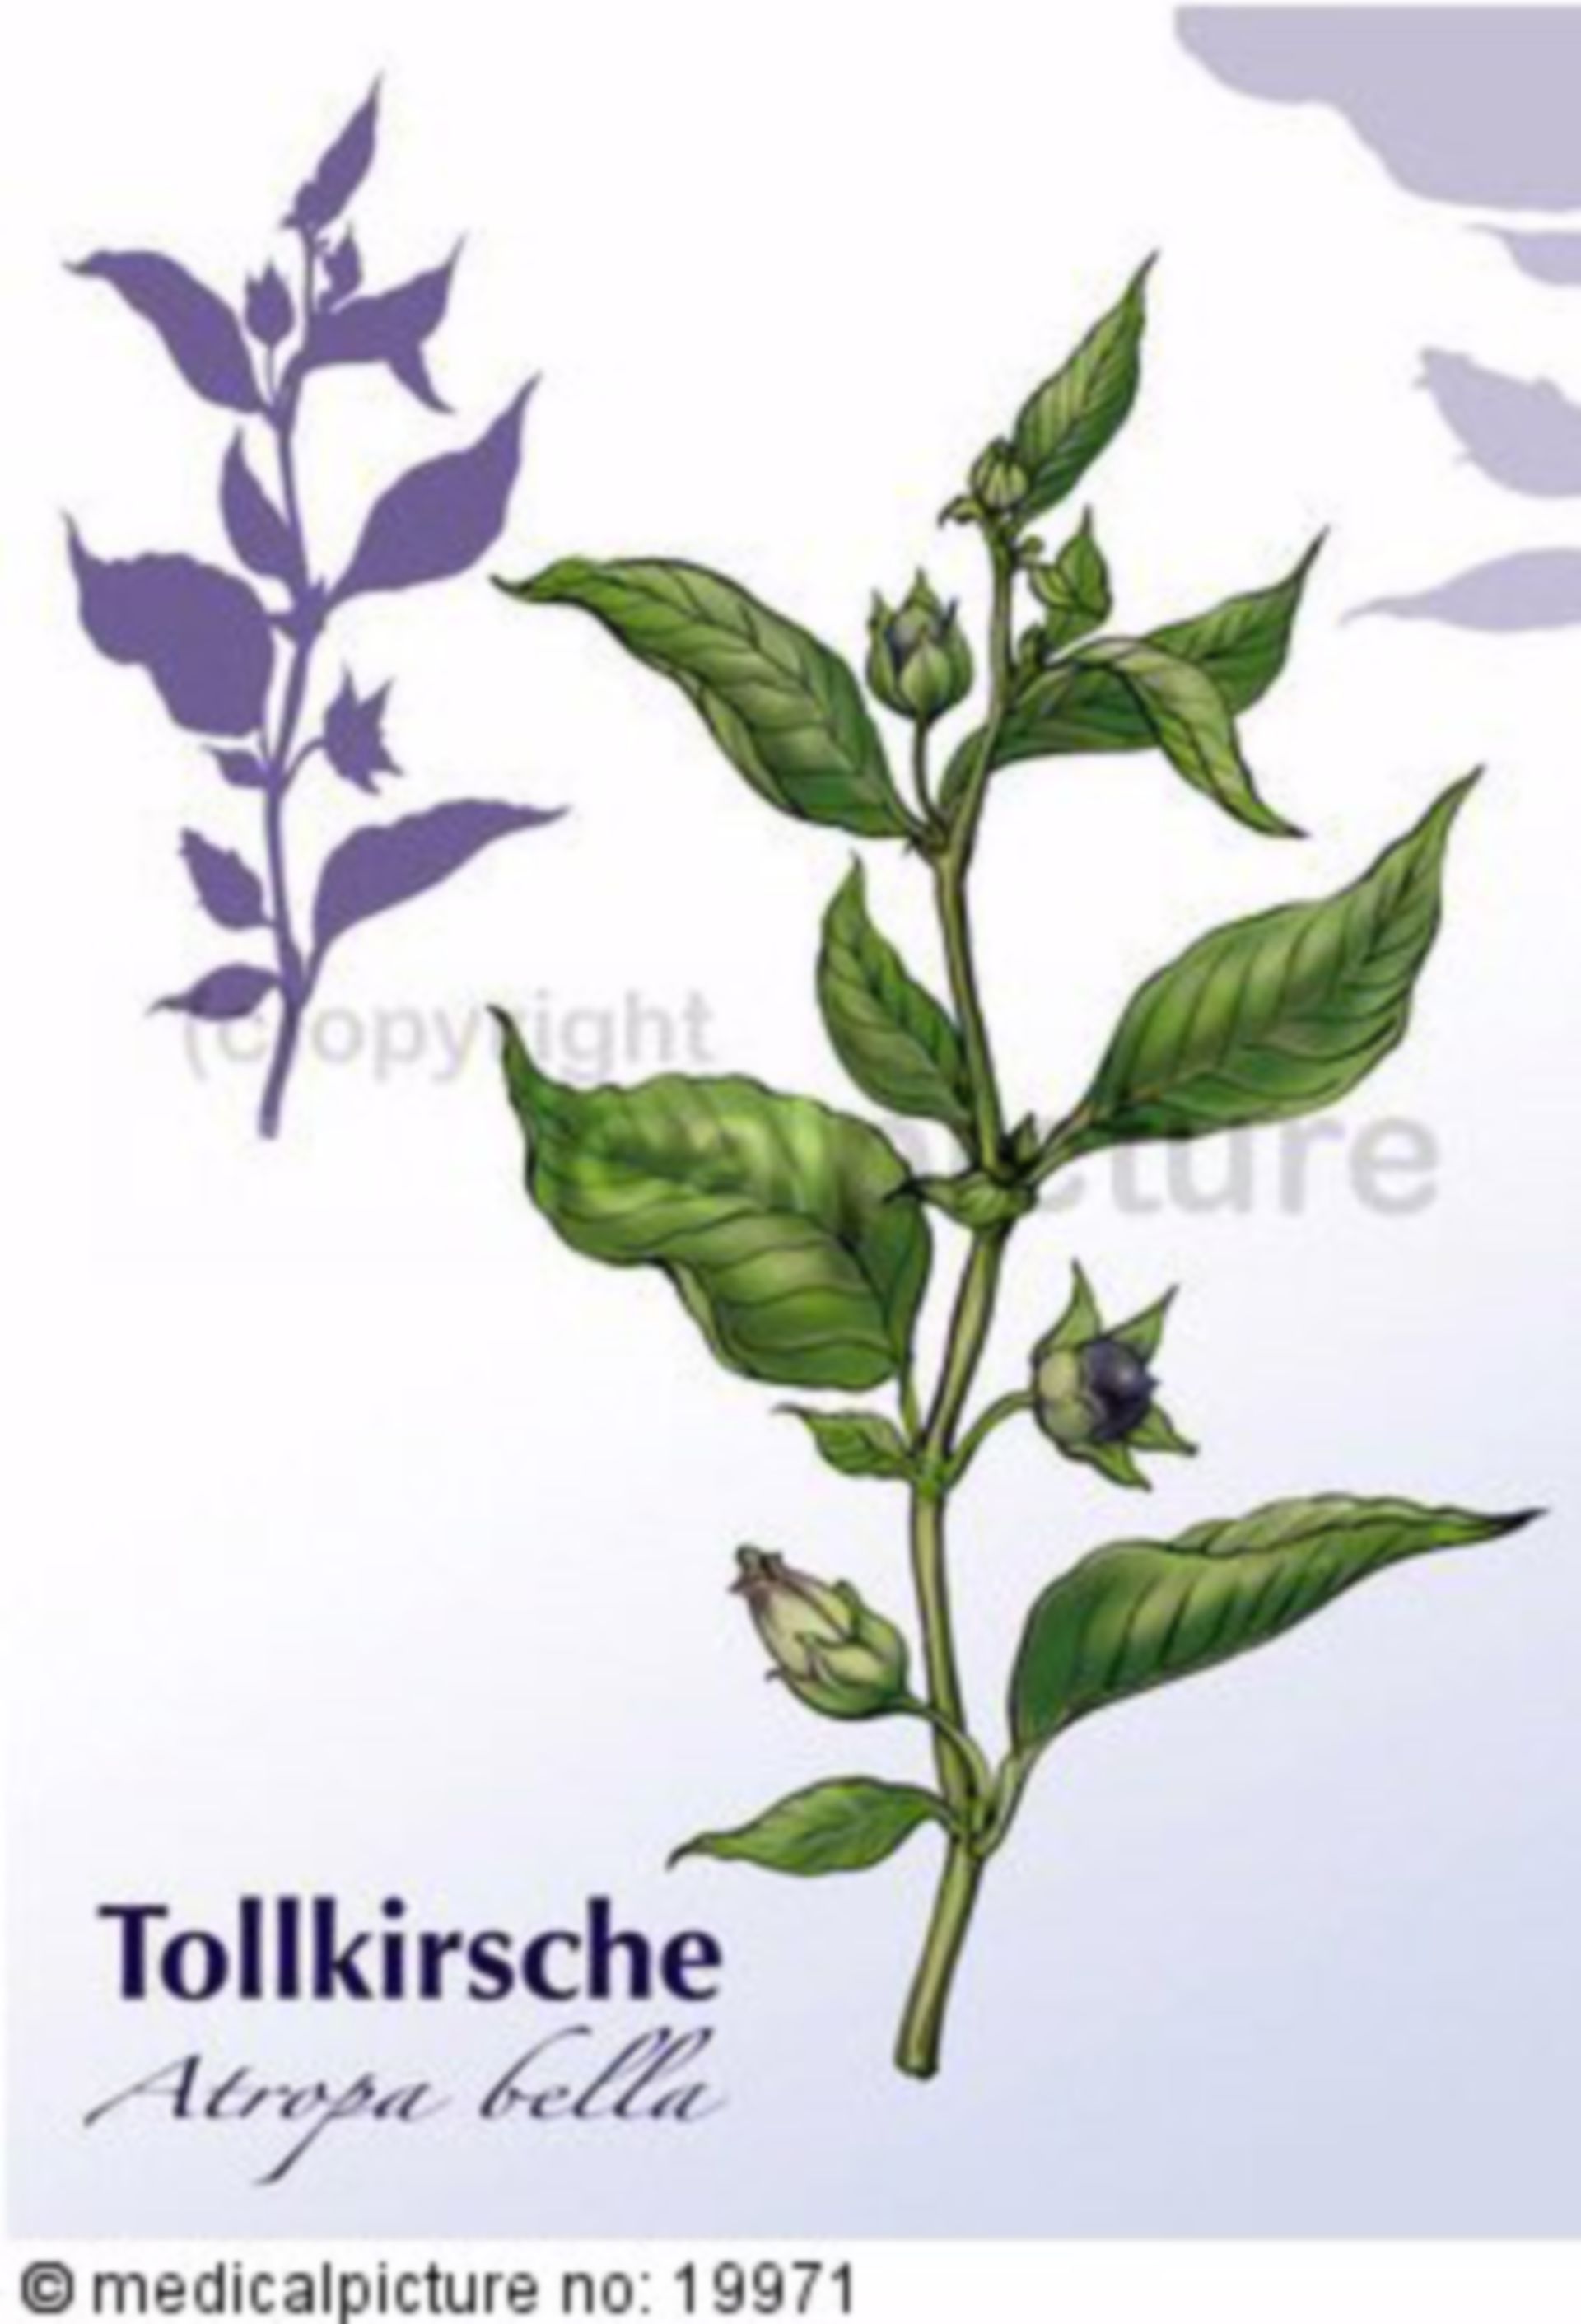  Tollkirsche, Atropa belladonna 
